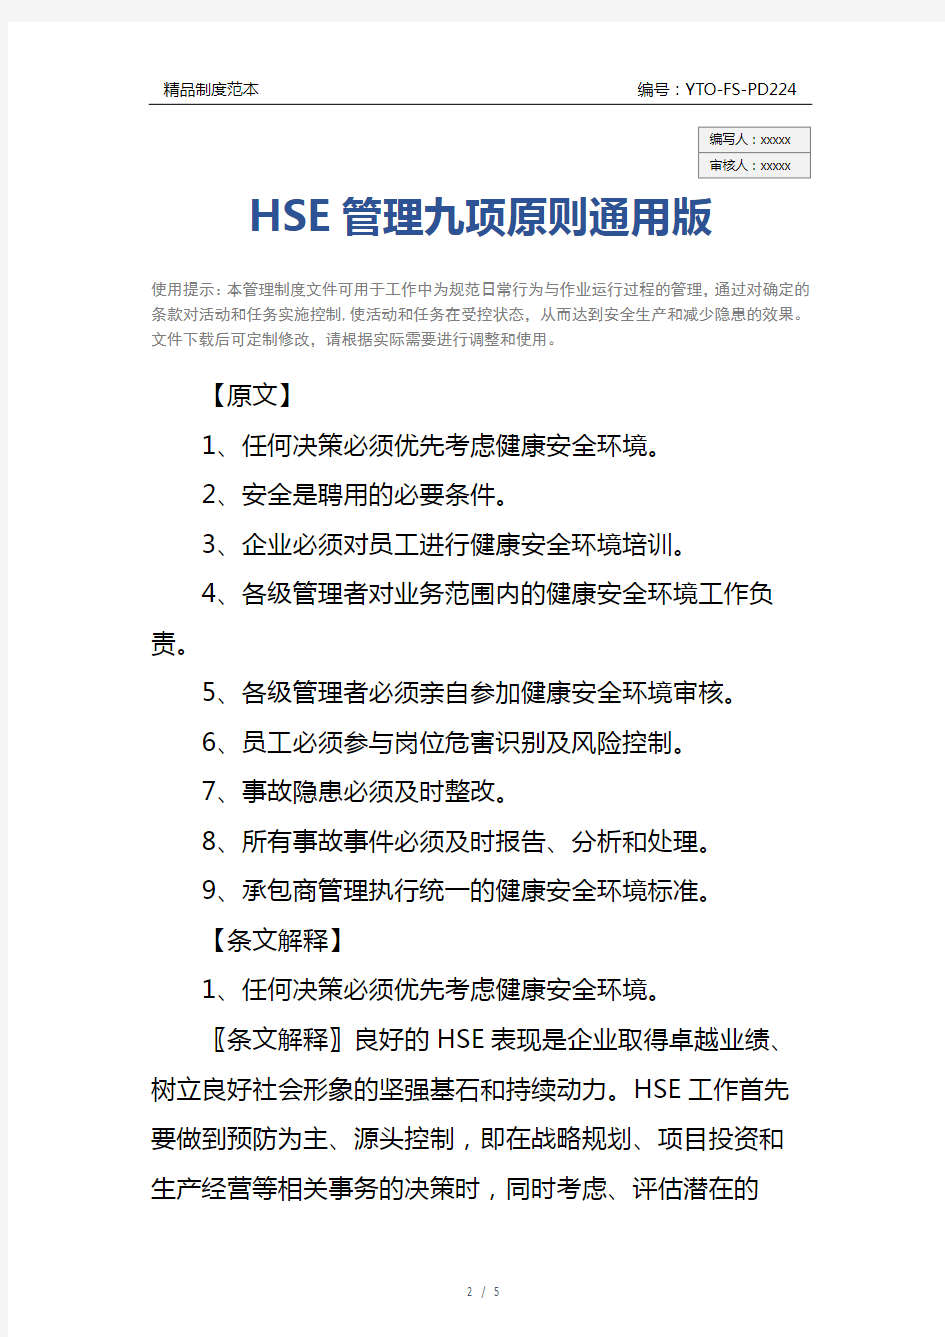 HSE管理九项原则通用版